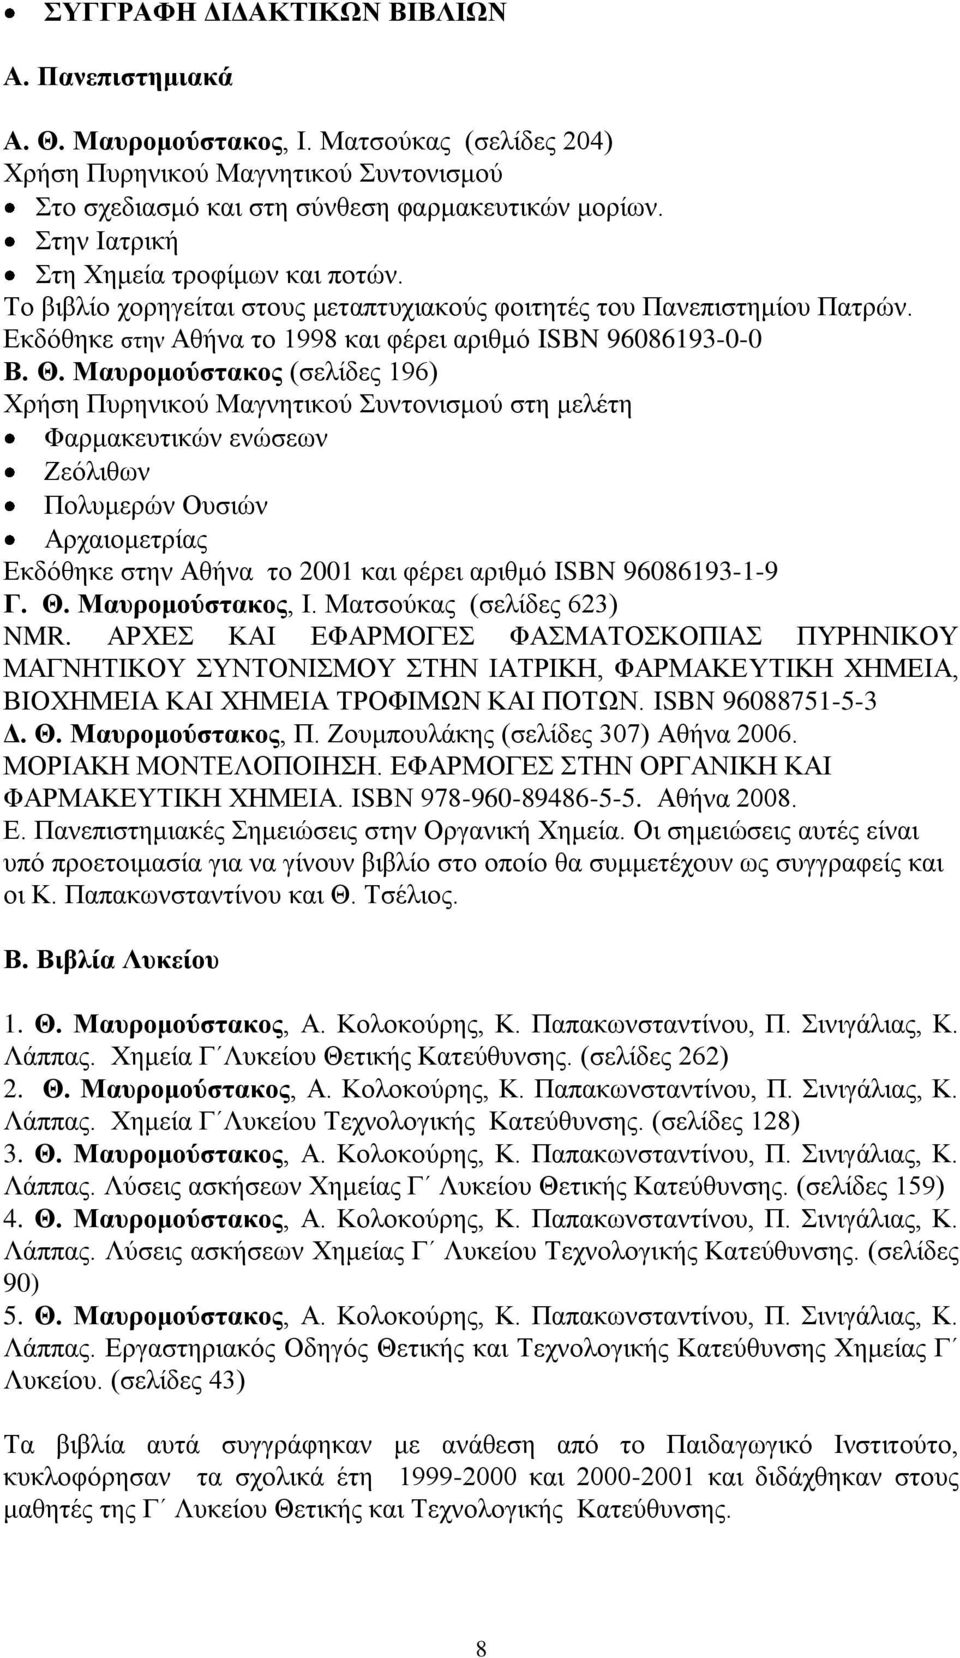 Μαυρομούστακος (σελίδες 196) Χρήση Πυρηνικού Μαγνητικού Συντονισμού στη μελέτη Φαρμακευτικών ενώσεων Ζεόλιθων Πολυμερών Ουσιών Αρχαιομετρίας Εκδόθηκε στην Αθήνα το 2001 και φέρει αριθμό ISBN